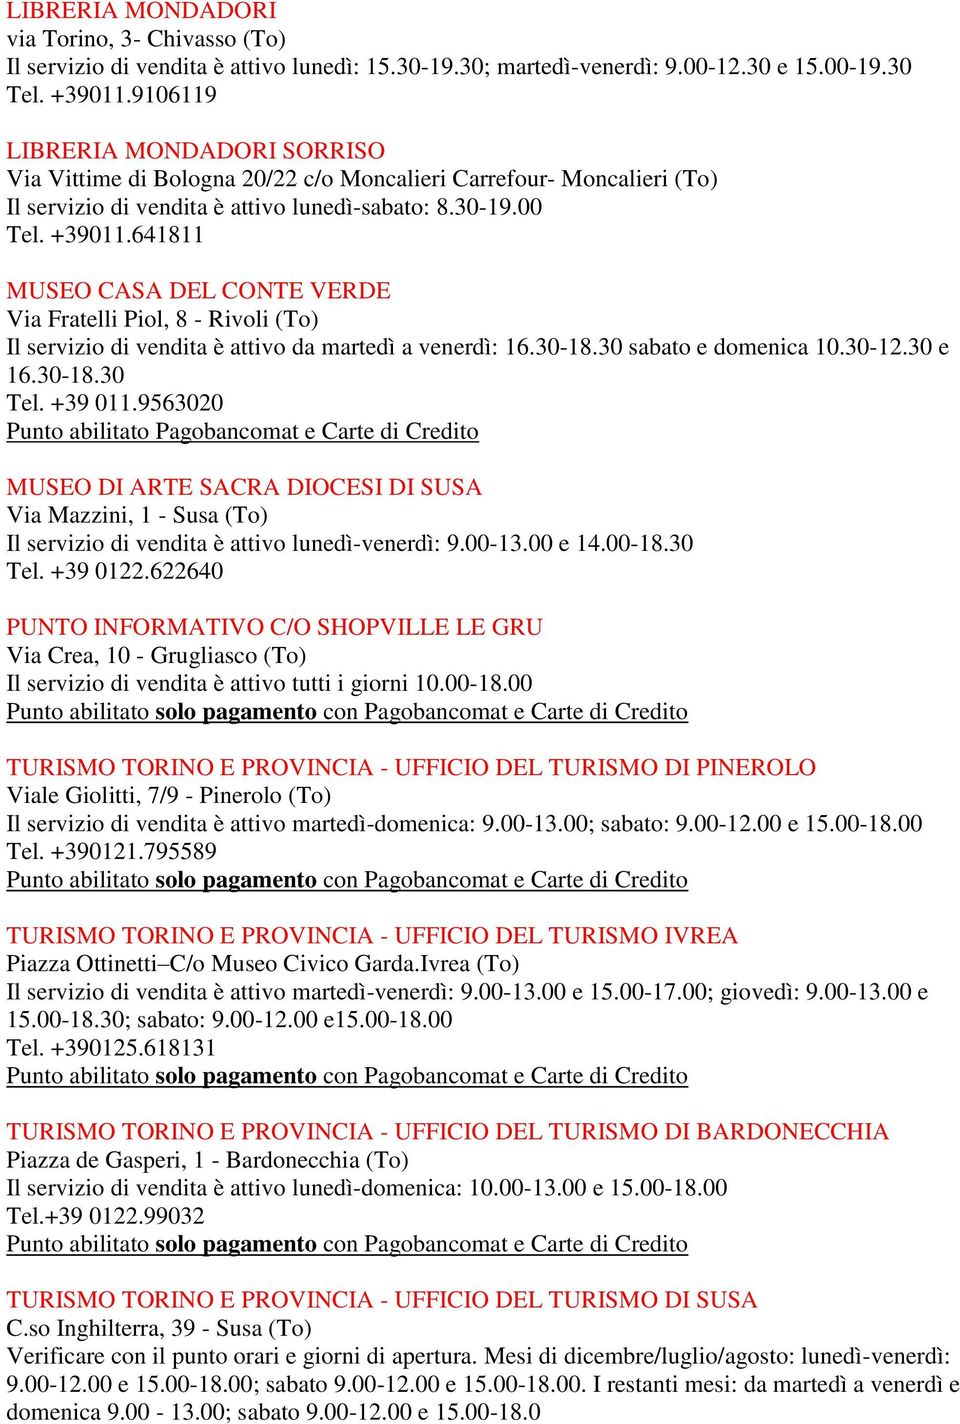 641811 MUSEO CASA DEL CONTE VERDE Via Fratelli Piol, 8 - Rivoli (To) Il servizio di vendita è attivo da martedì a venerdì: 16.30-18.30 sabato e domenica 10.30-12.30 e 16.30-18.30 Tel. +39 011.